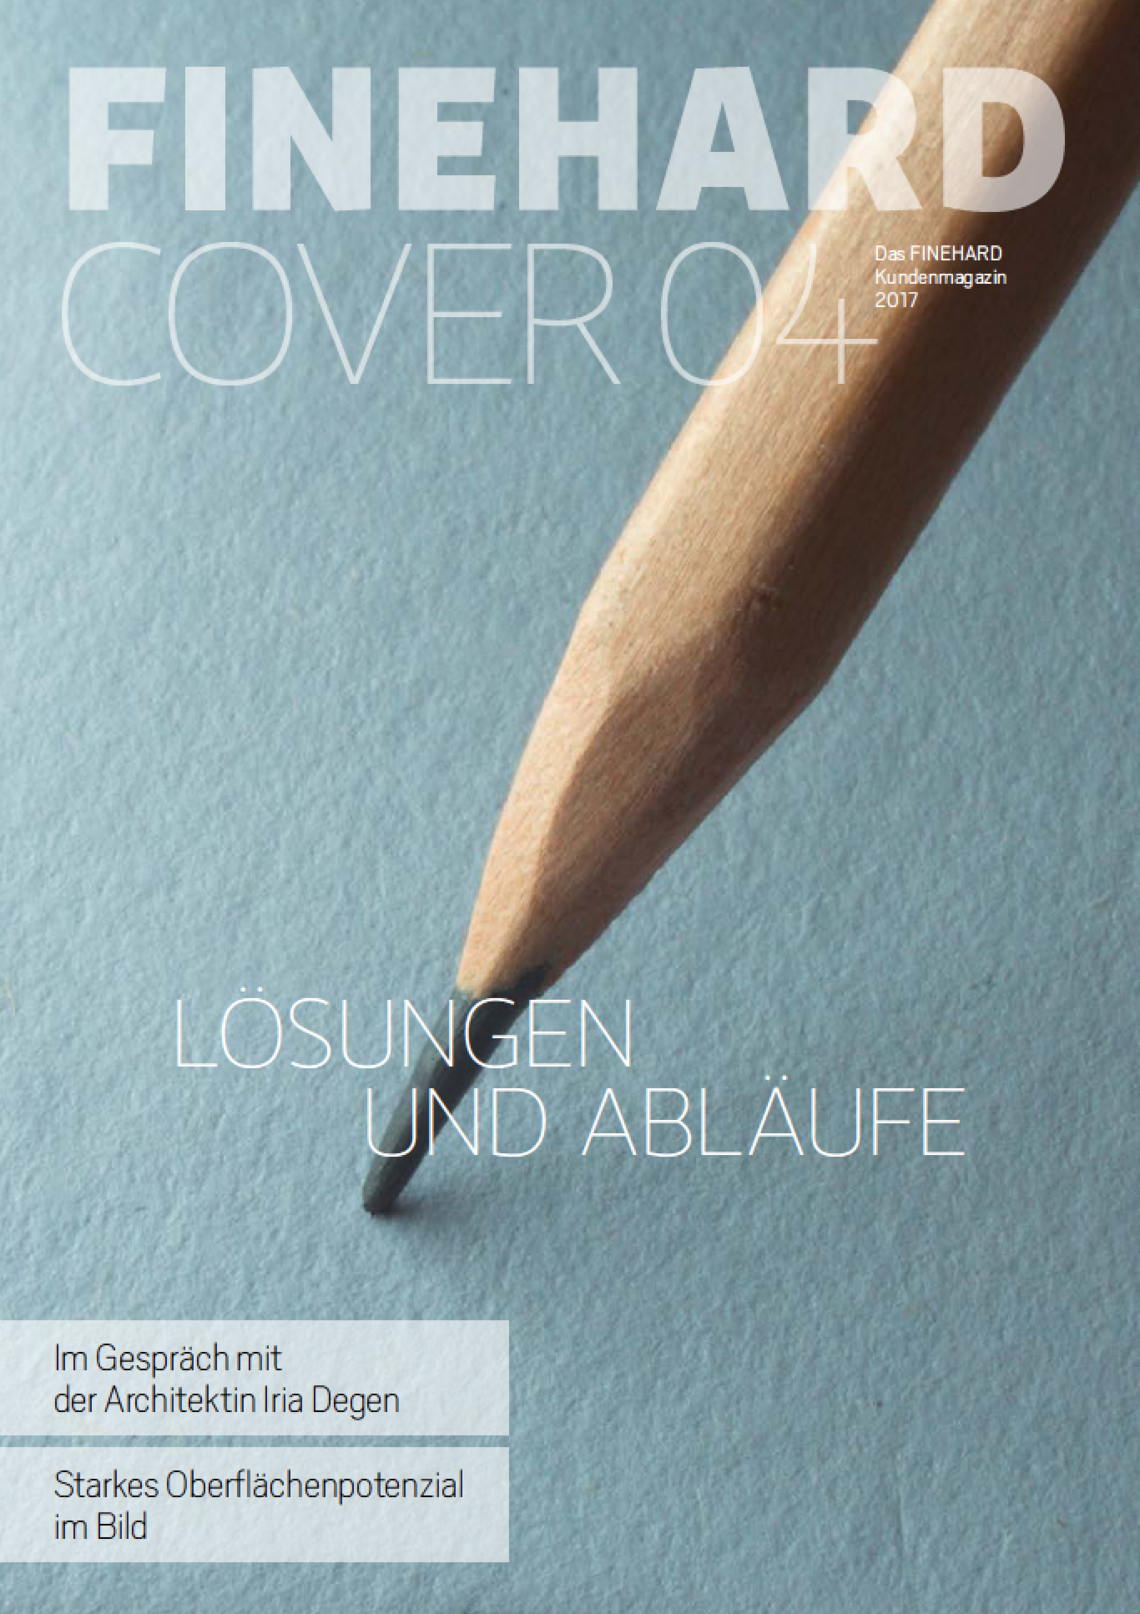 Magazin-Vorschau. FINEHARD Cover Nr. 4: Lösungen und Abläufe. Küchenarbeitsplatte in Basalt-Optik, davor eine Nahaufnahme eines Bleistifts. Eine von vielen FINEHARD Oberflächen.